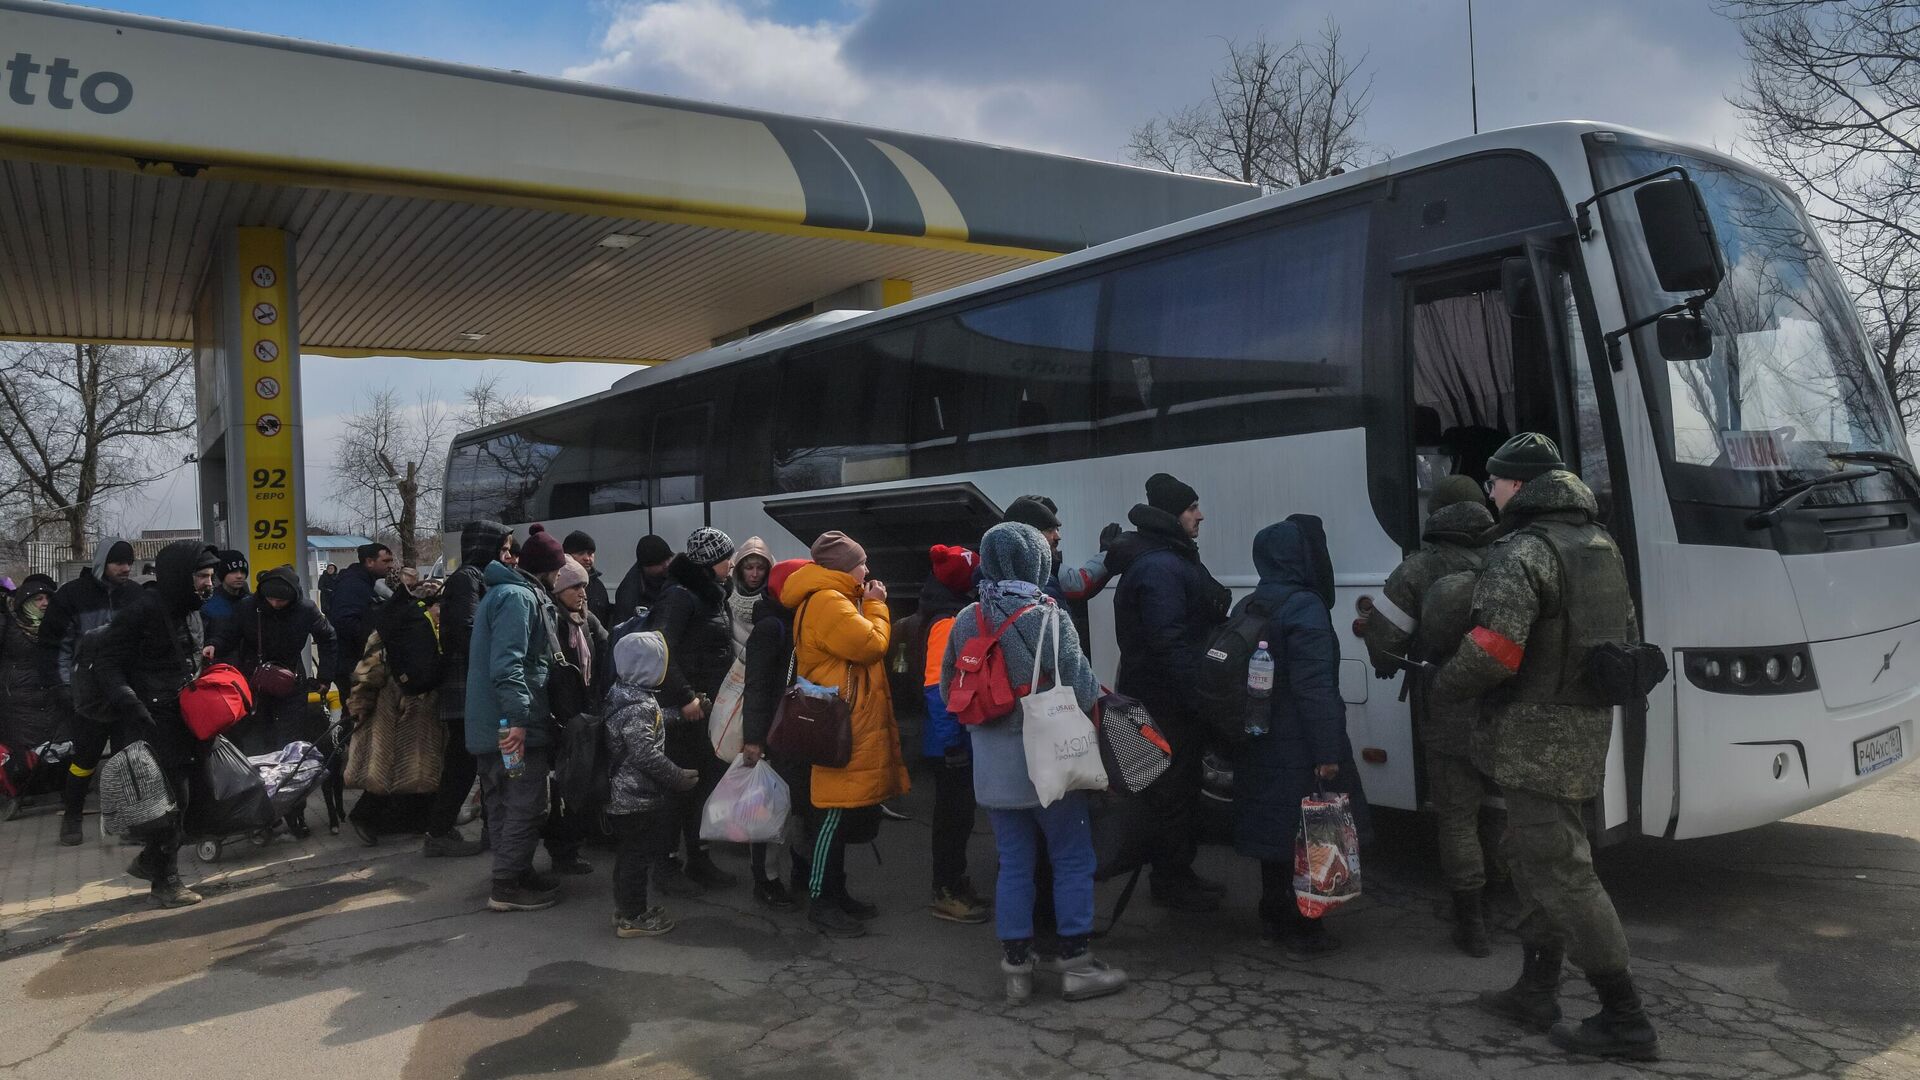 Беженцы готовятся к посадке в автобус на Запорожском шоссе в Мариуполе  - РИА Новости, 1920, 16.04.2022